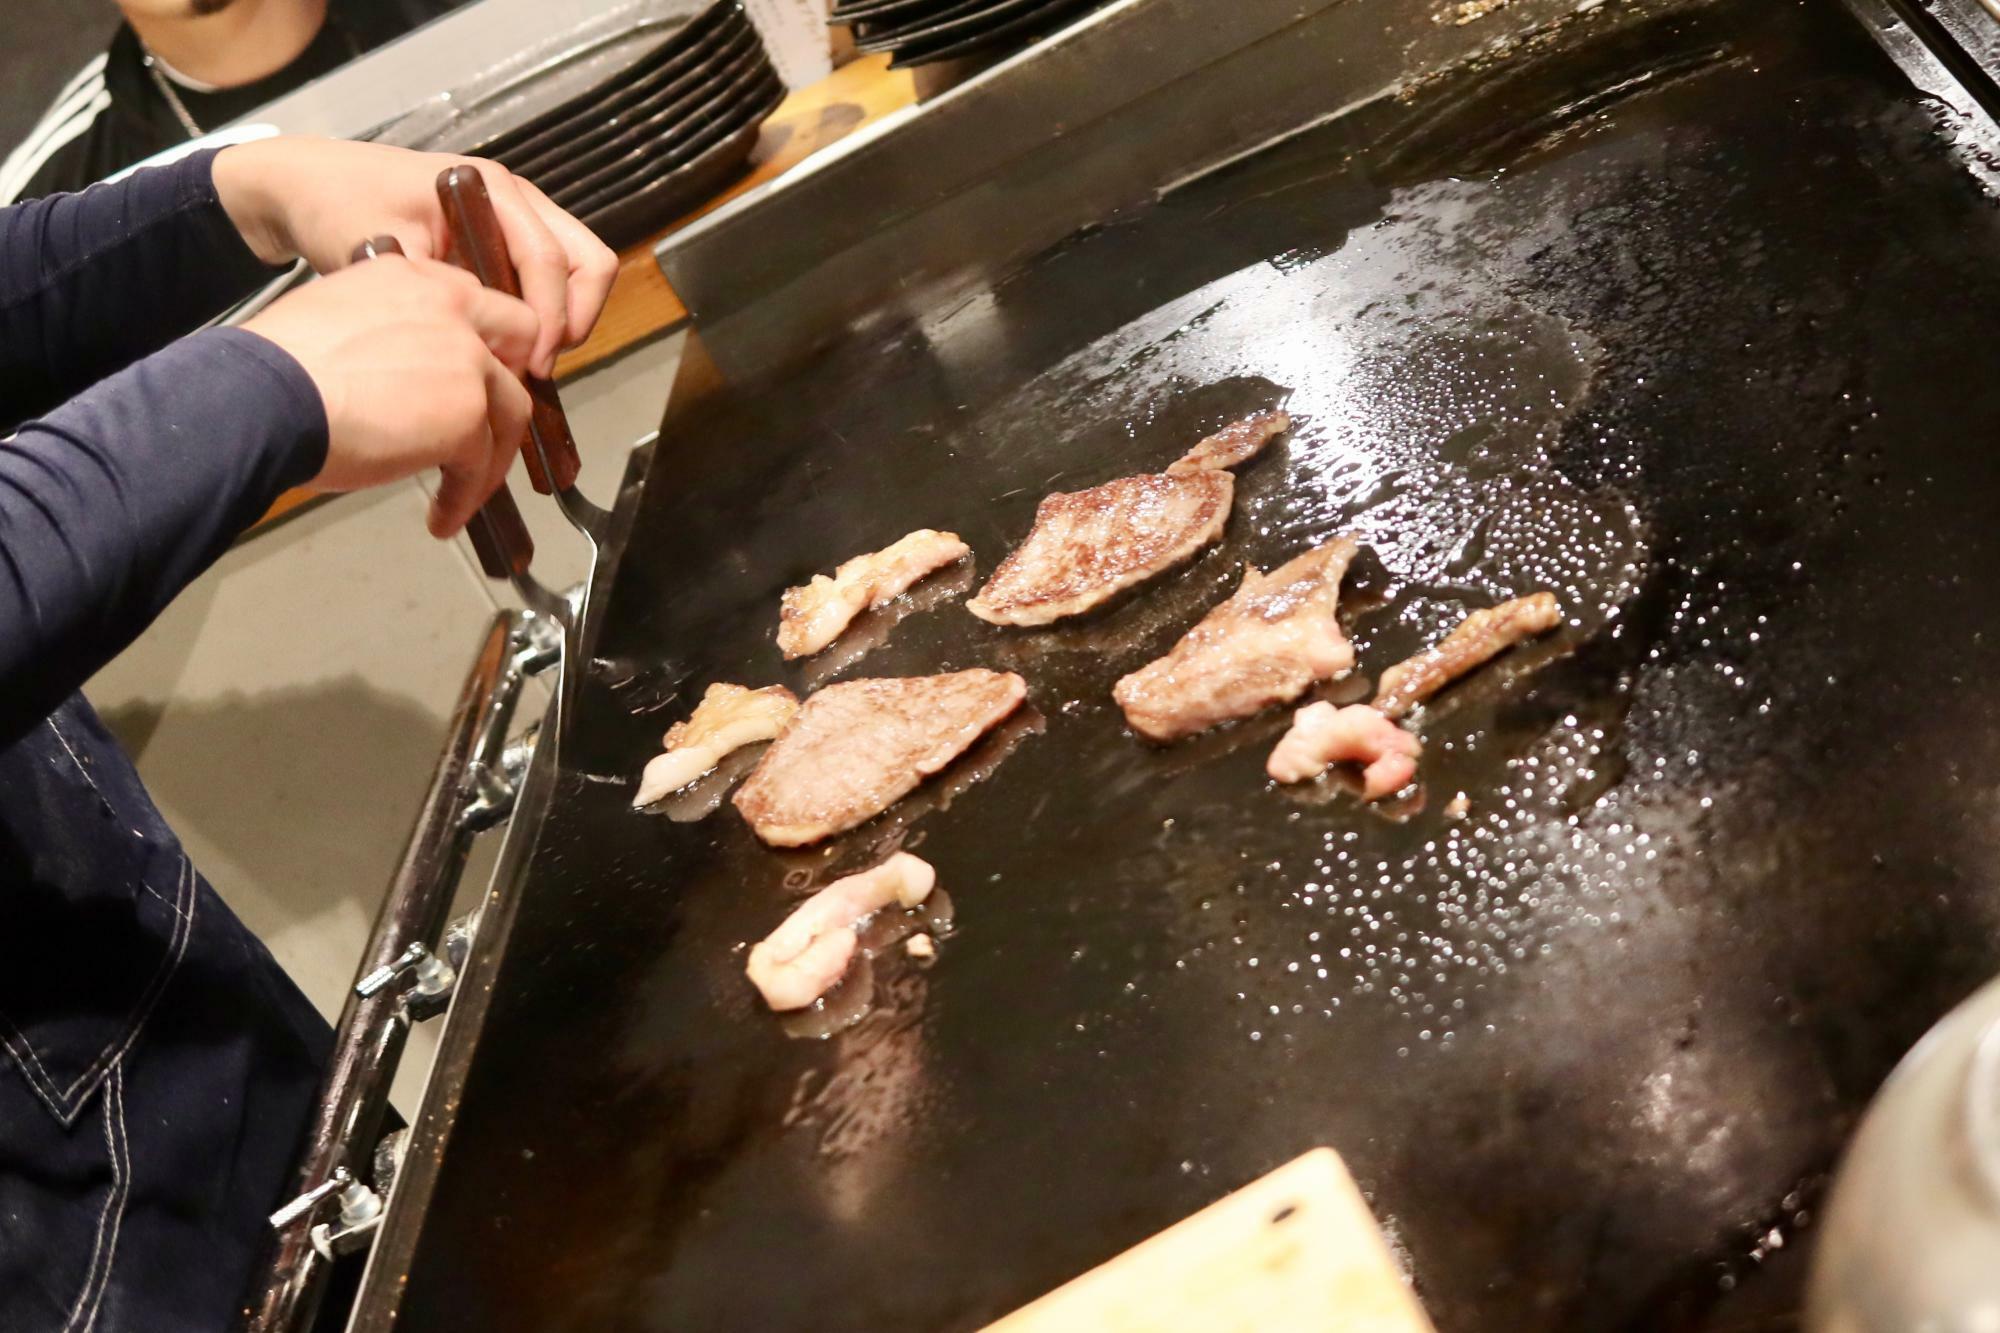 目の前の鉄板で調理されるお肉やお野菜